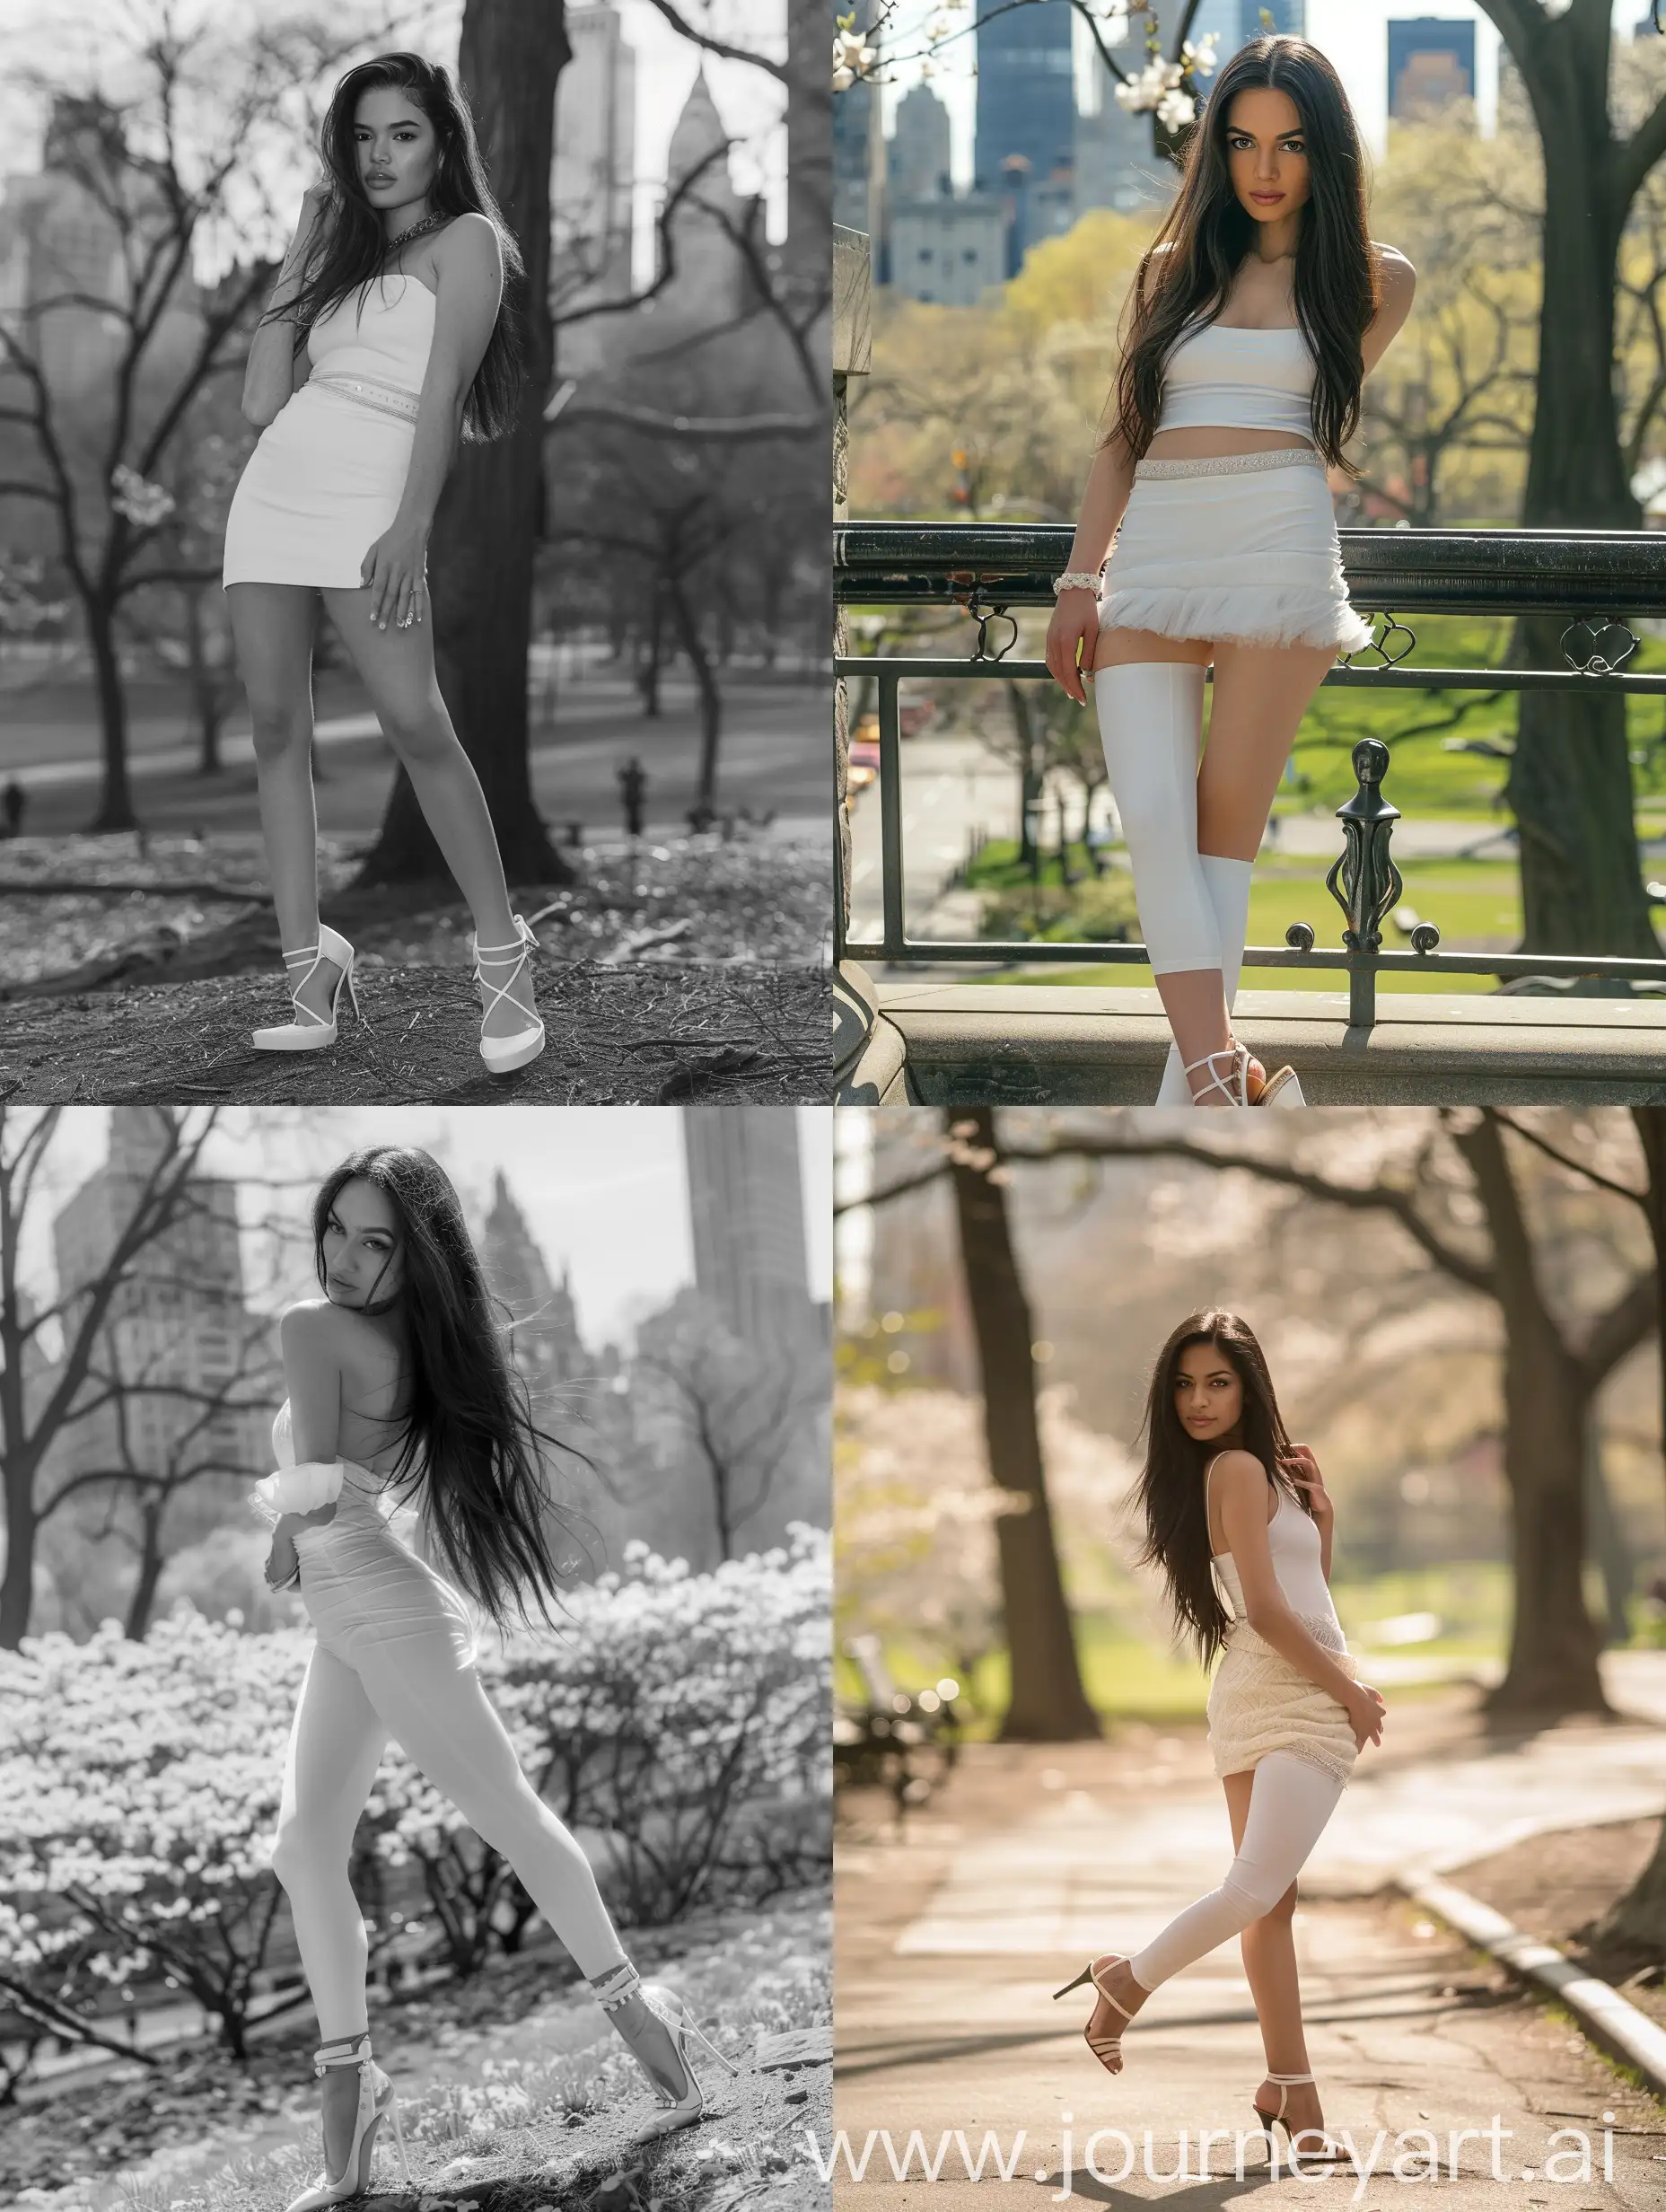 профессиональная съемка, девушка с темными длинными волосами, позирует, туфли на каблуке, белое облегающее платье, в центральном парке нью-йорка, весной